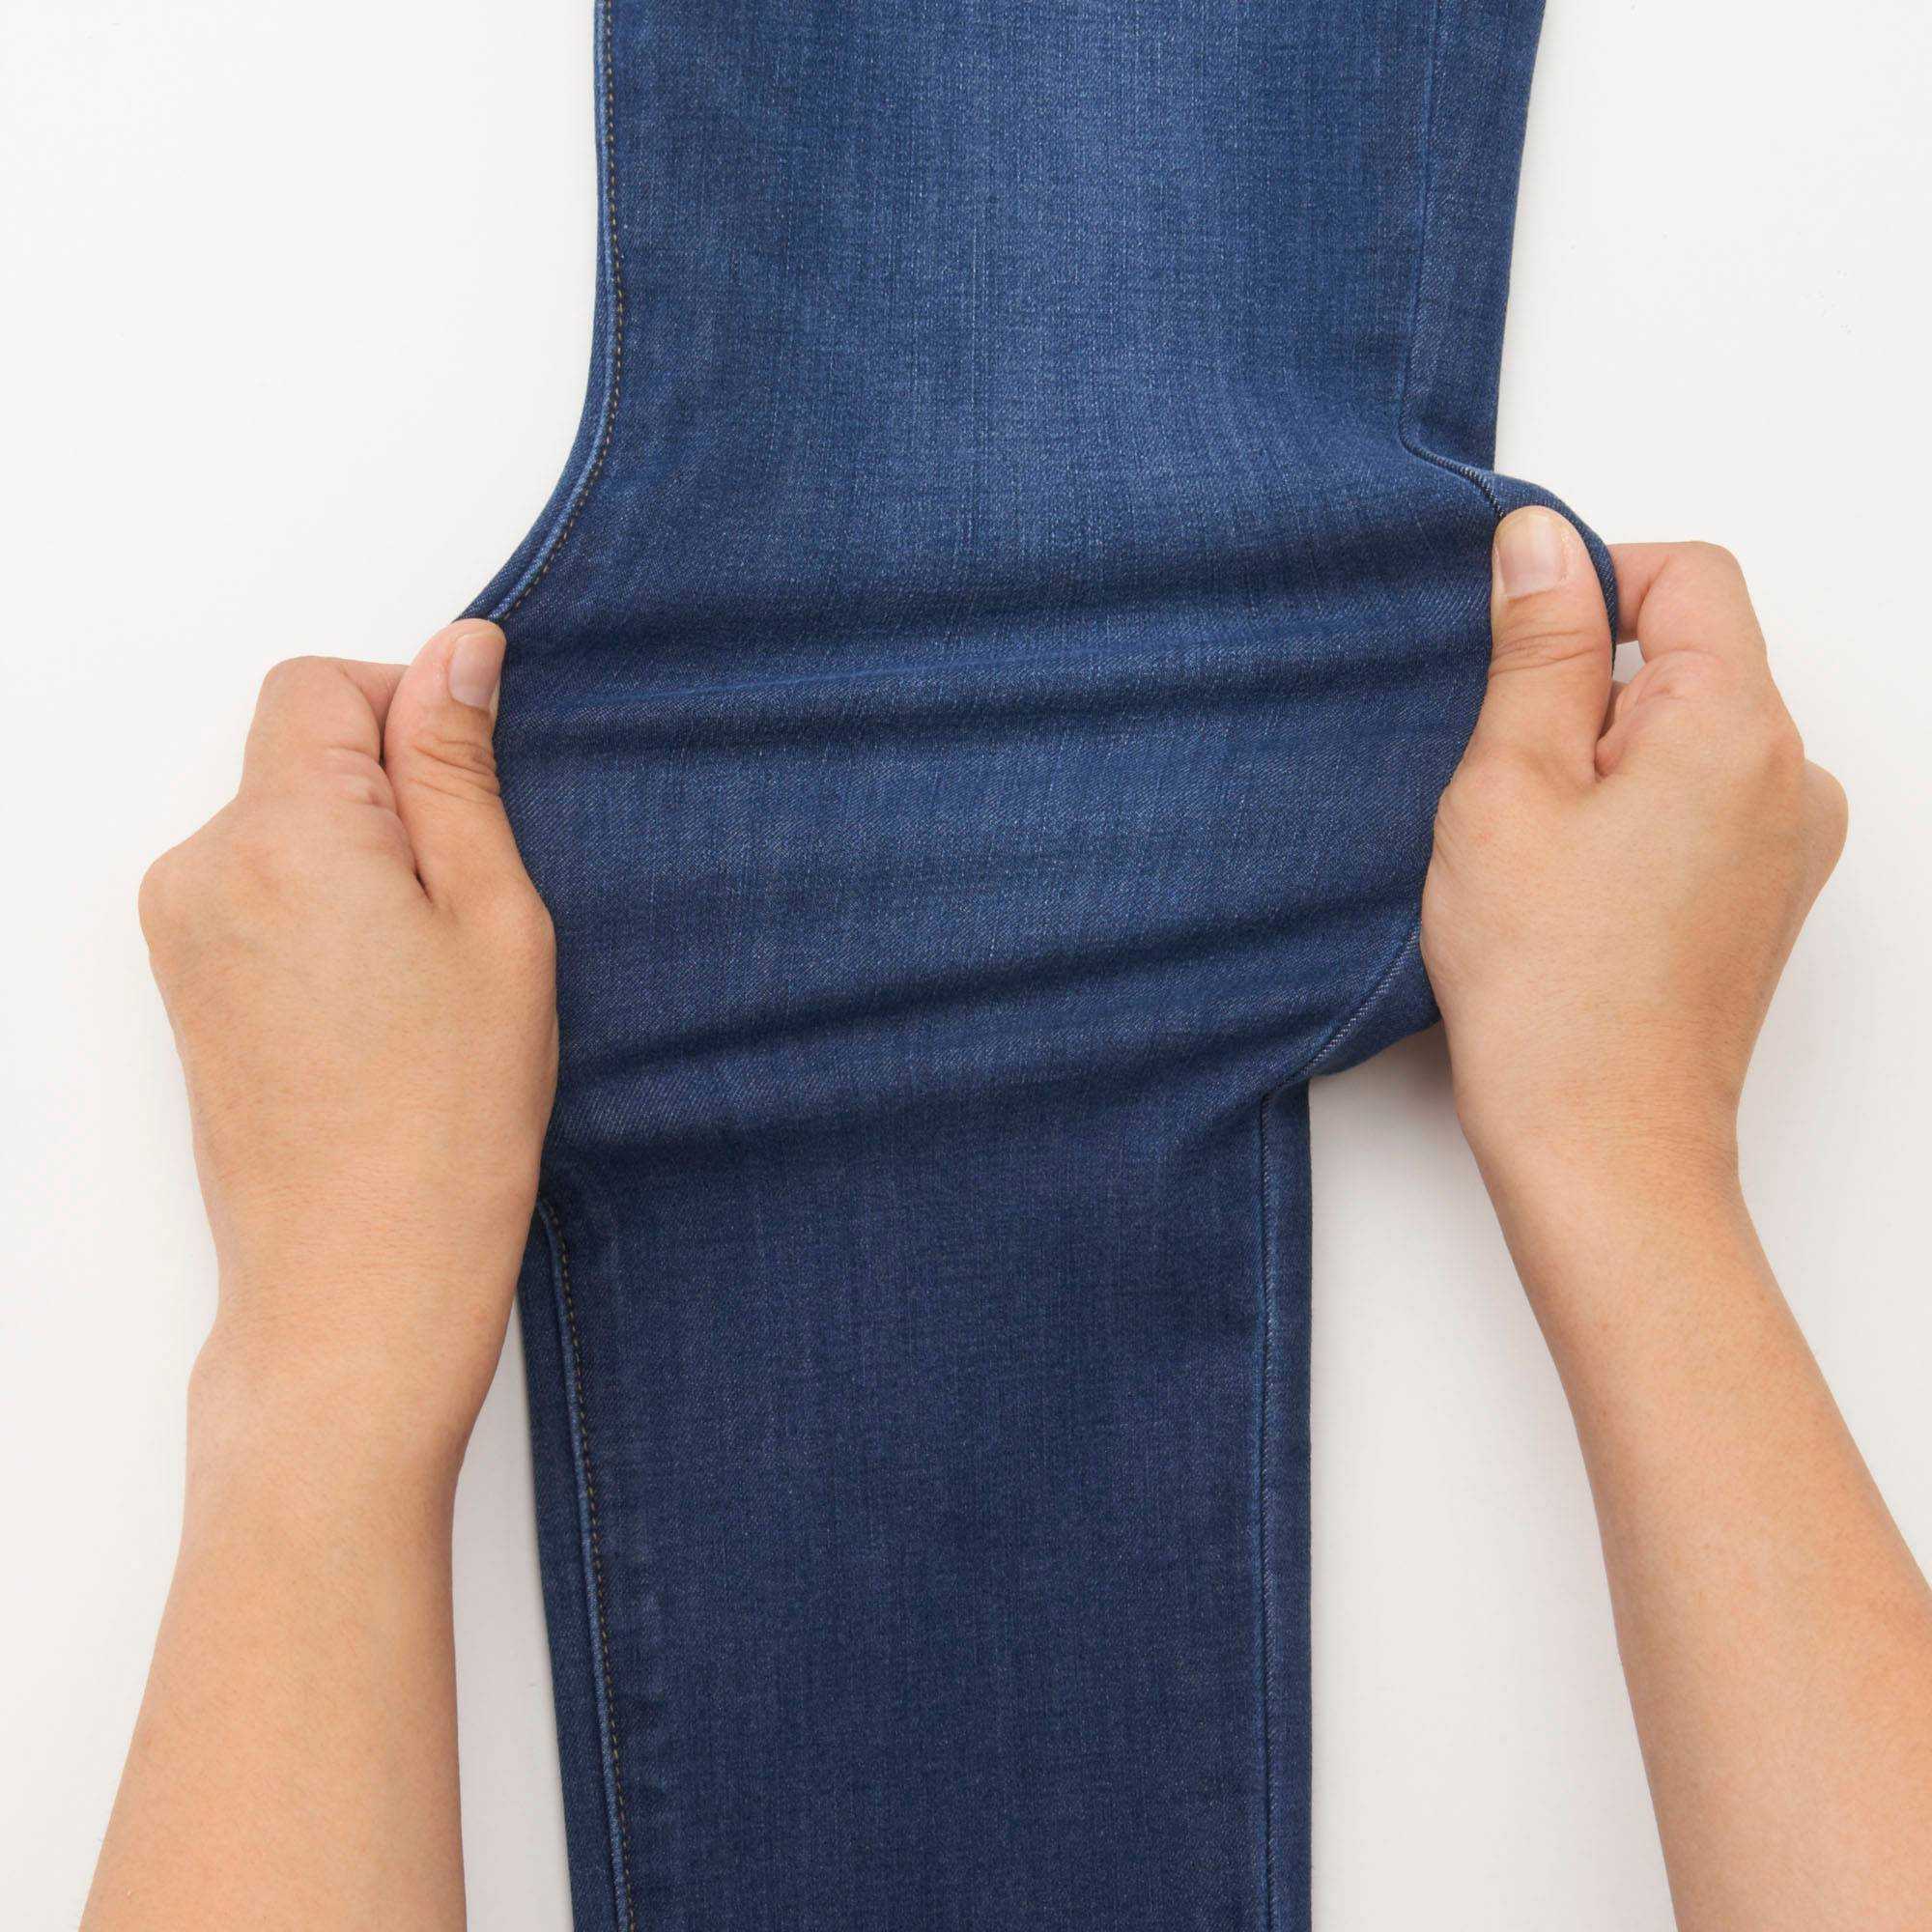 Как растянуть джинсы, действенные методы с подробным описанием